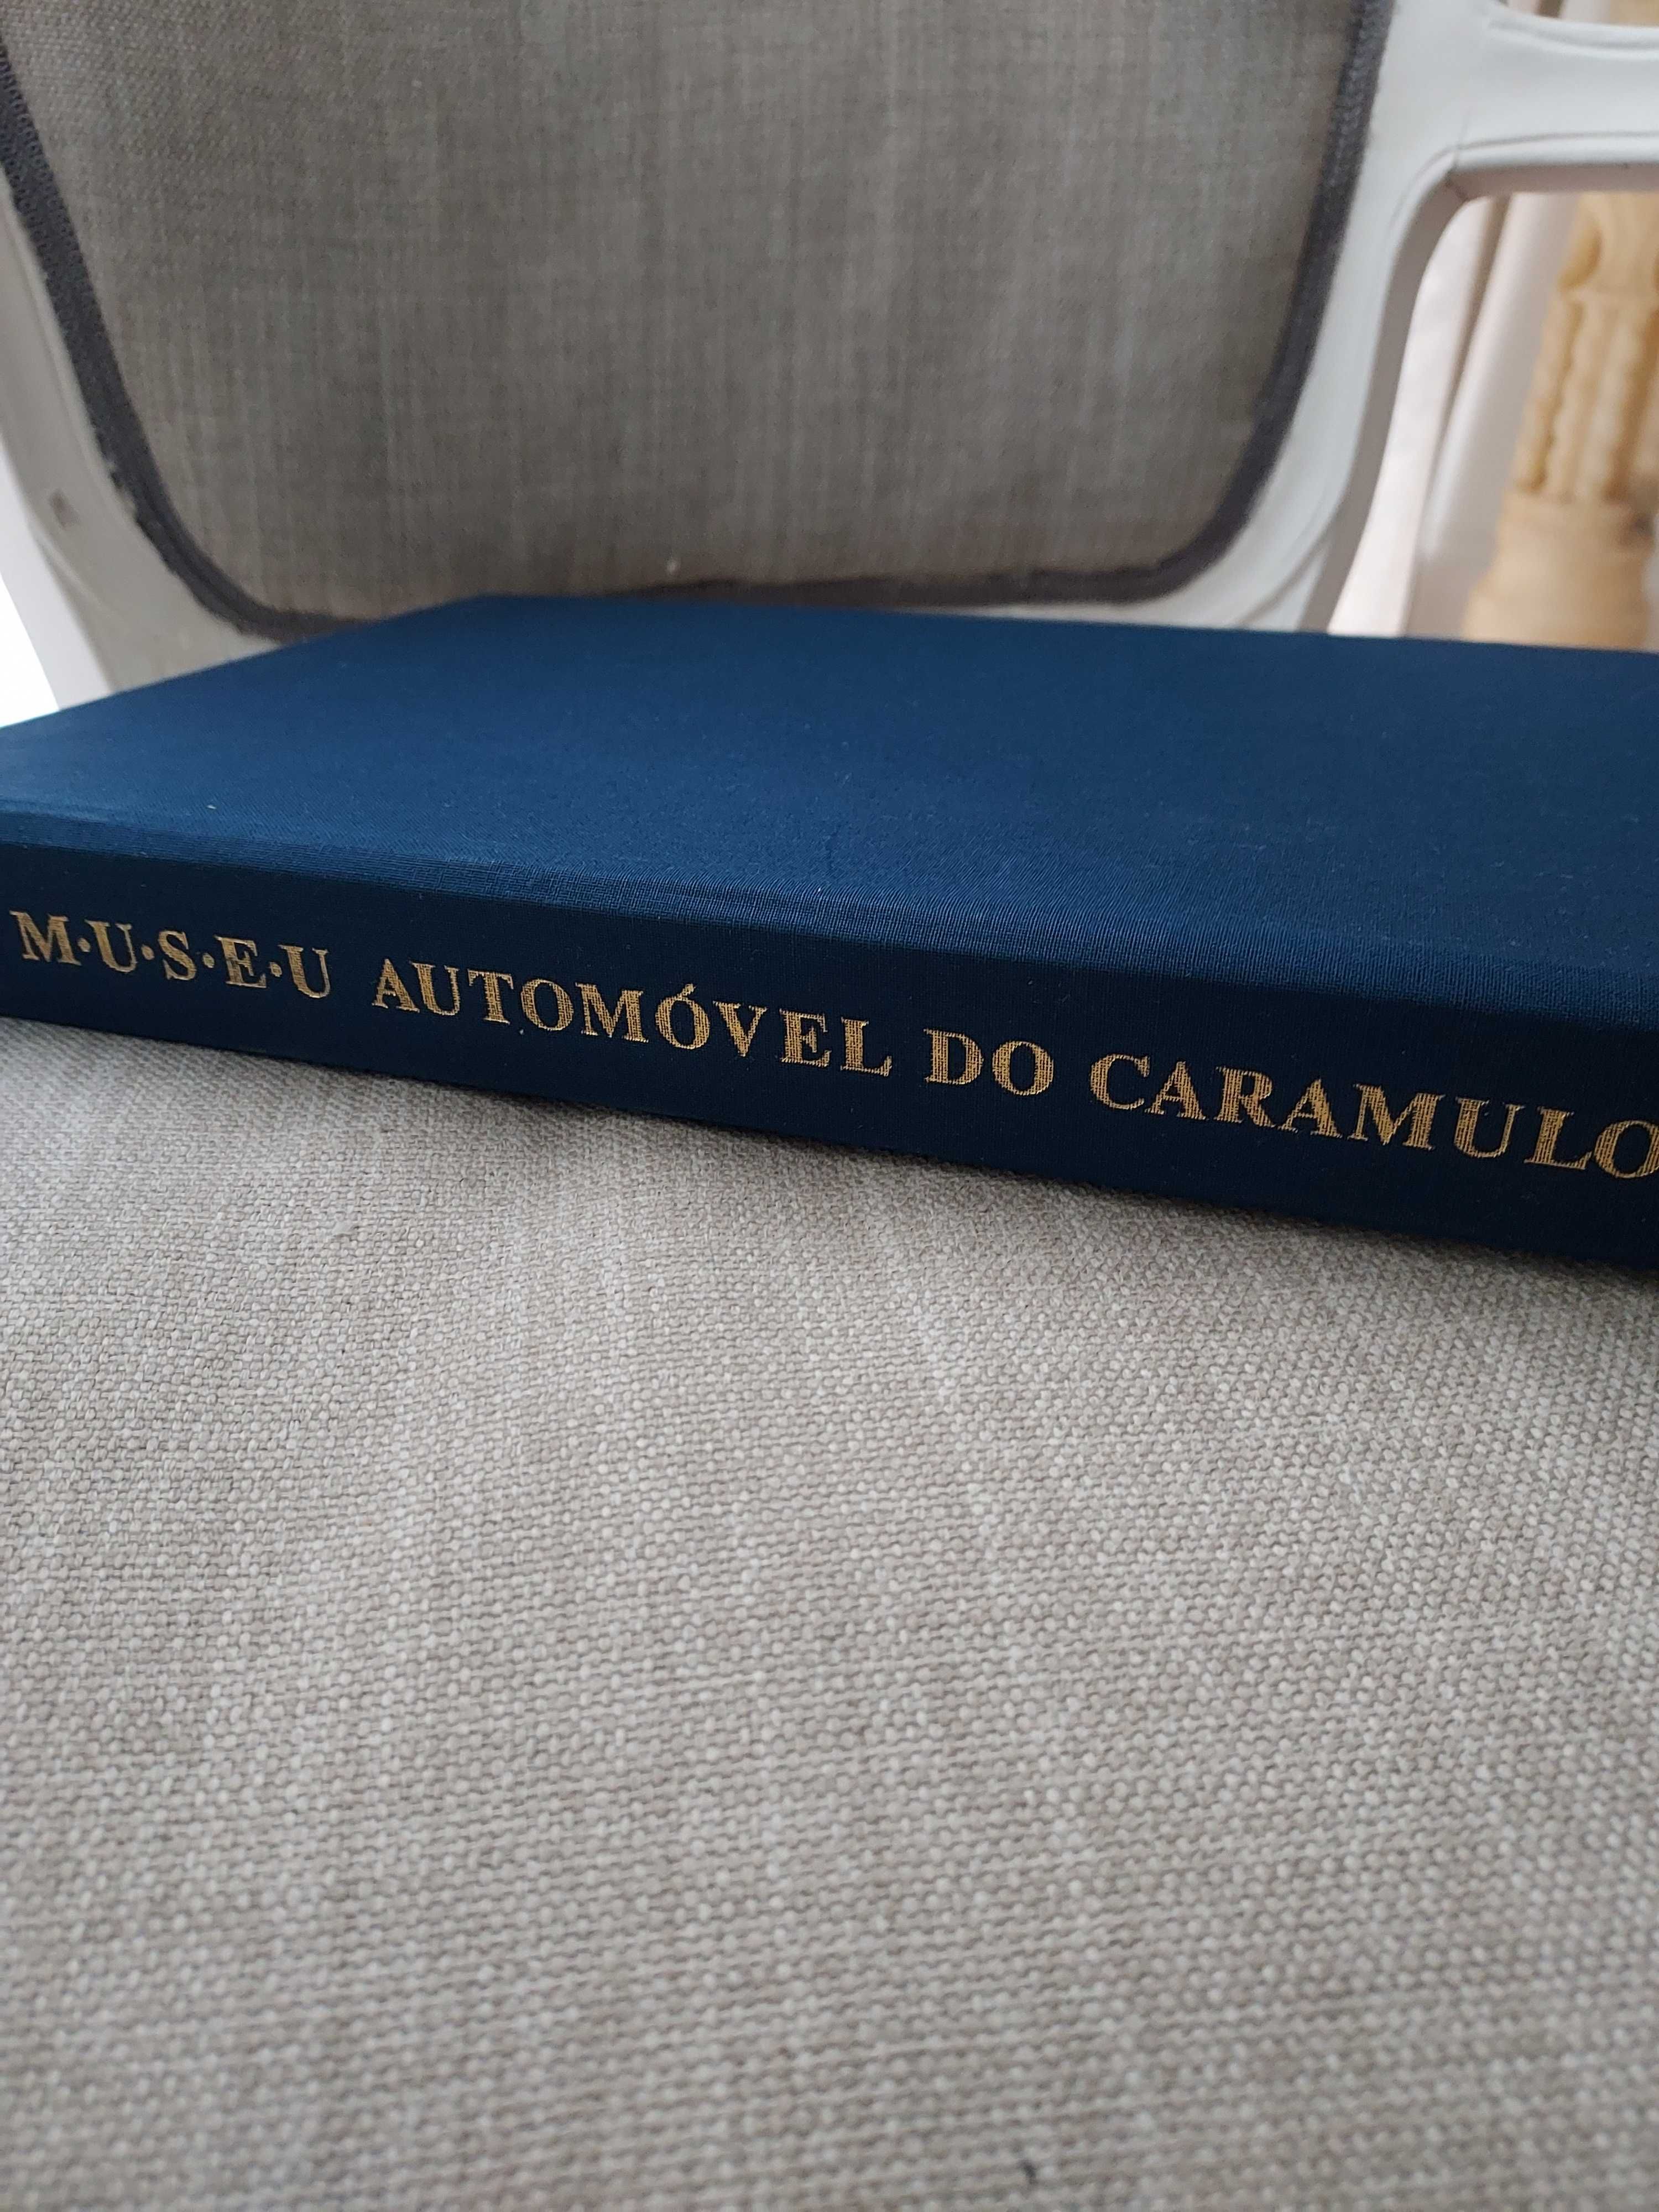 Livro Museu Automóvel  do Caramulo